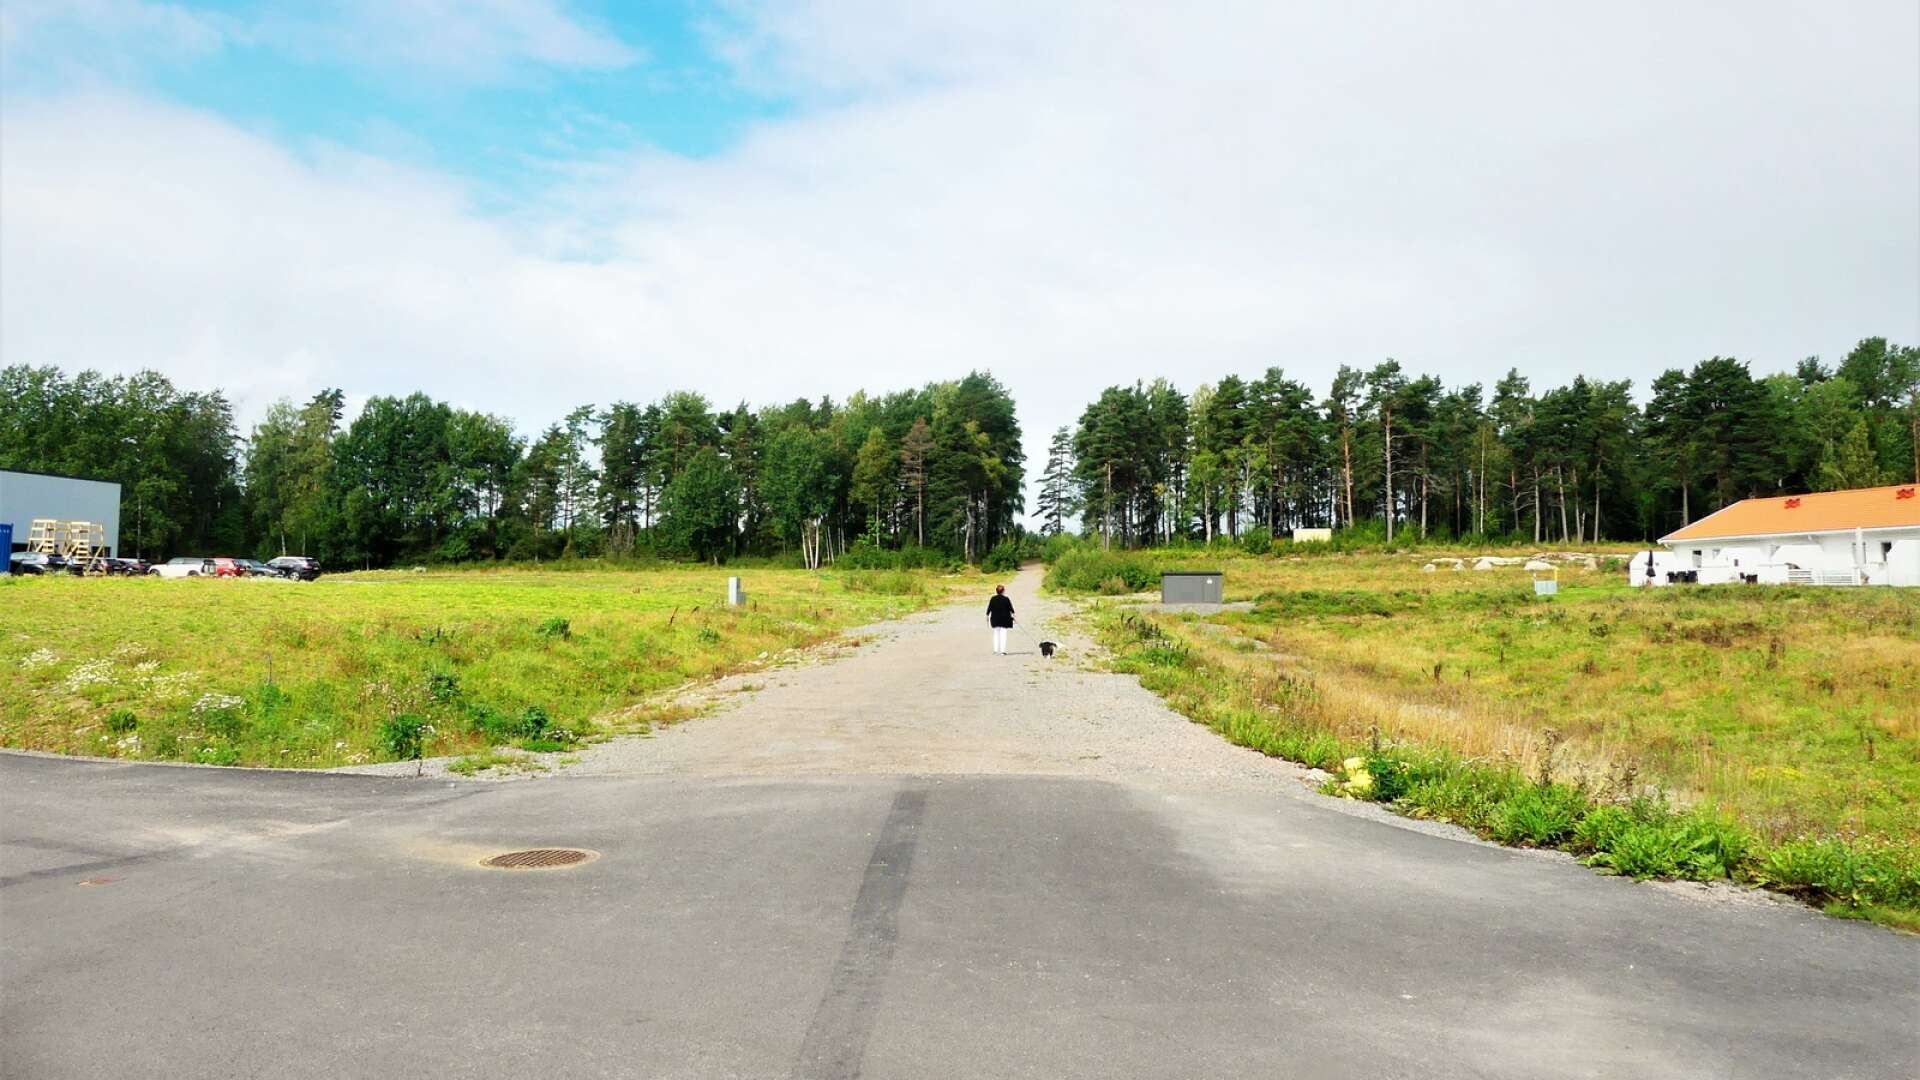 I bortre änden av Axvägen är det tänkt att ”Säbo Tjuke” ska byggas, Åmåls nya äldreboende.